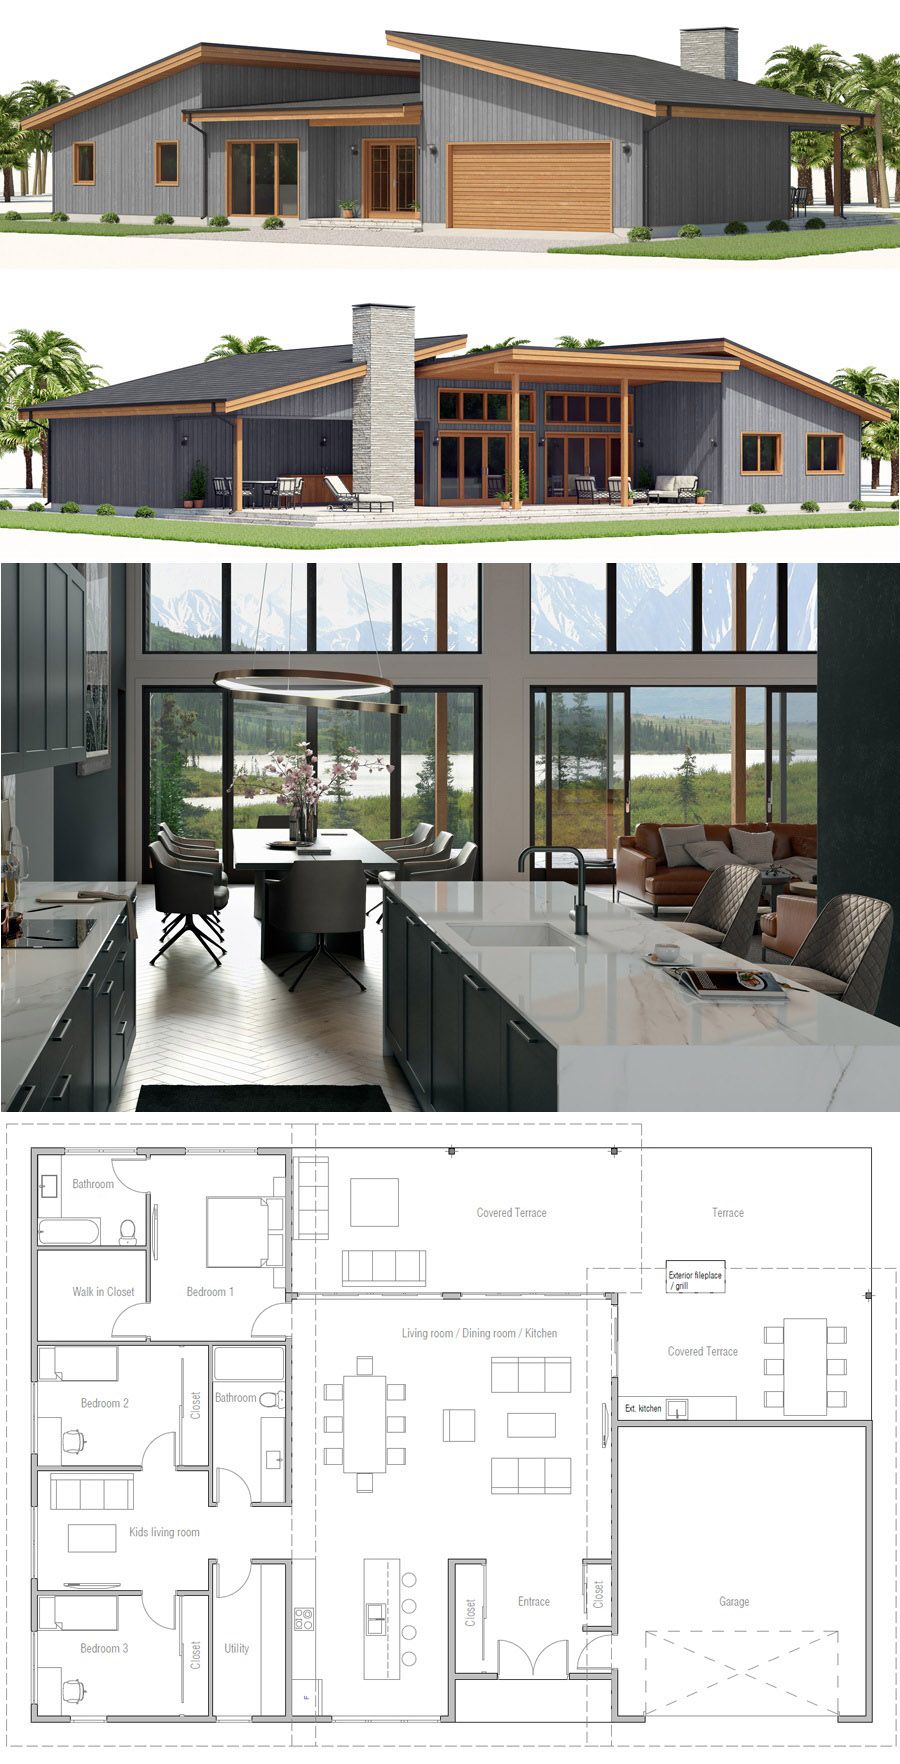 Gartendesign Modern Frisch House Plan Modern Home Design Modernhouse